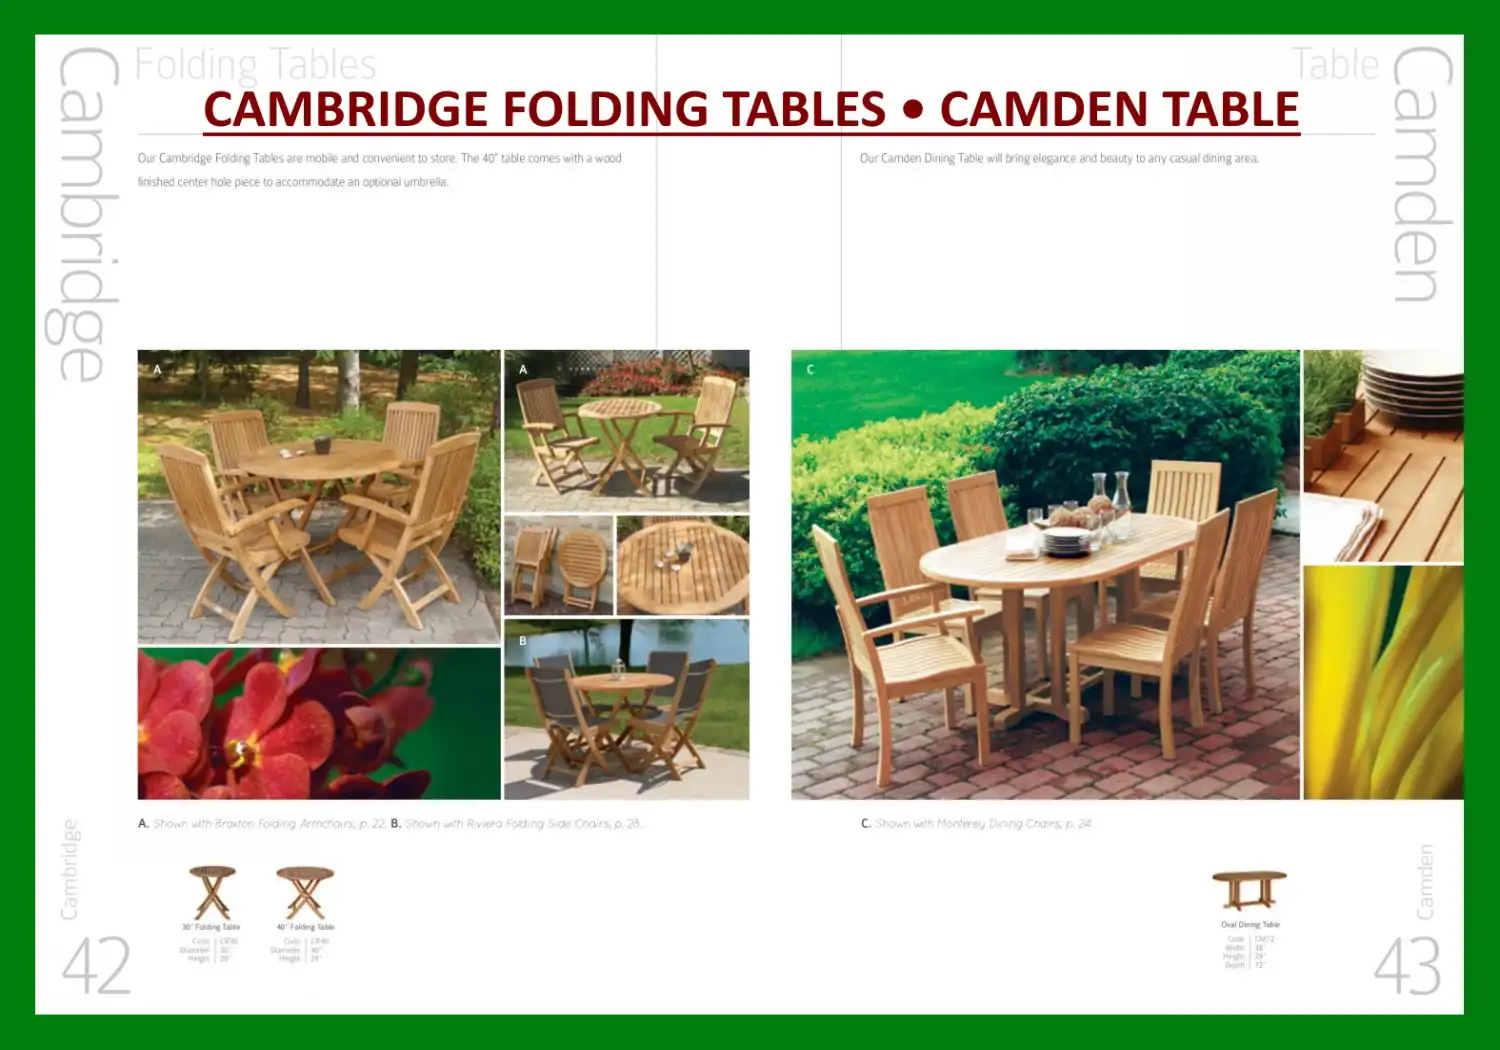 CAMBRIDGE FOLDING TABLES • CAMDEN TABLE